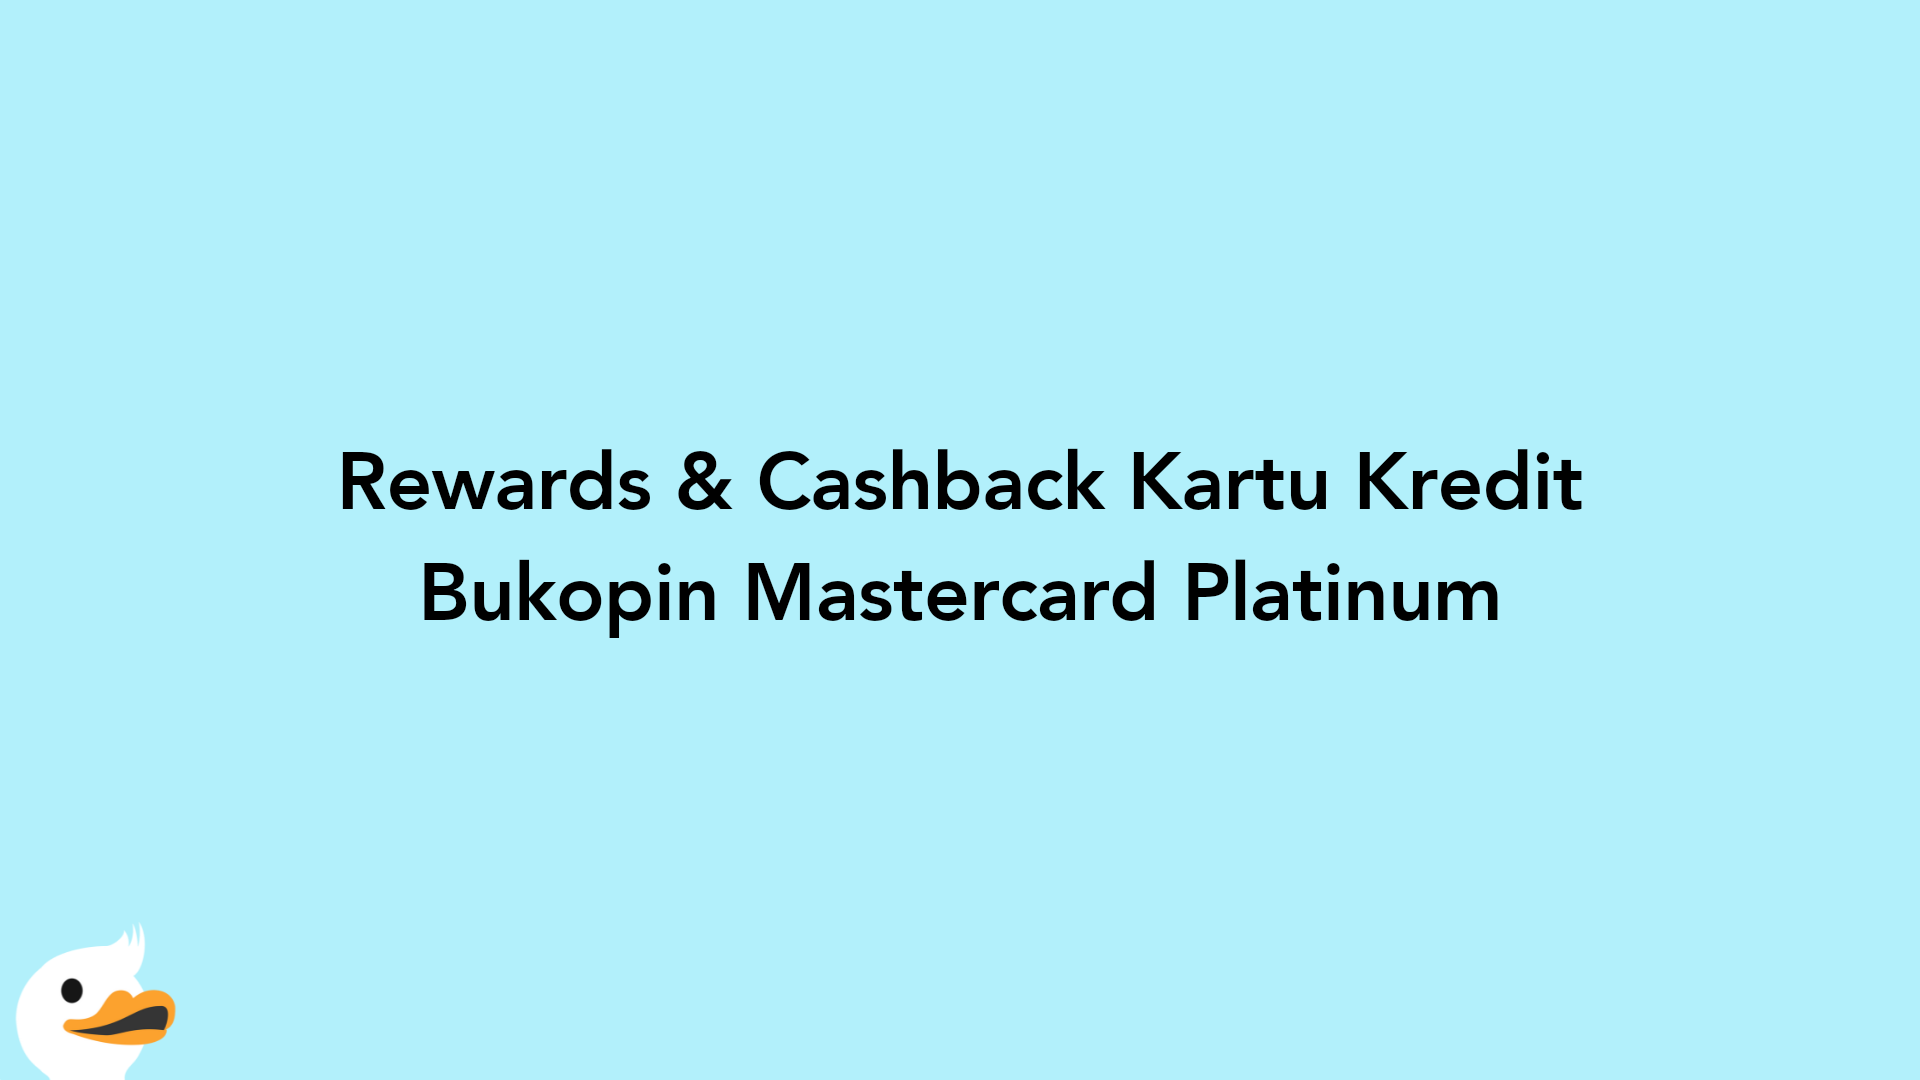 Rewards & Cashback Kartu Kredit Bukopin Mastercard Platinum